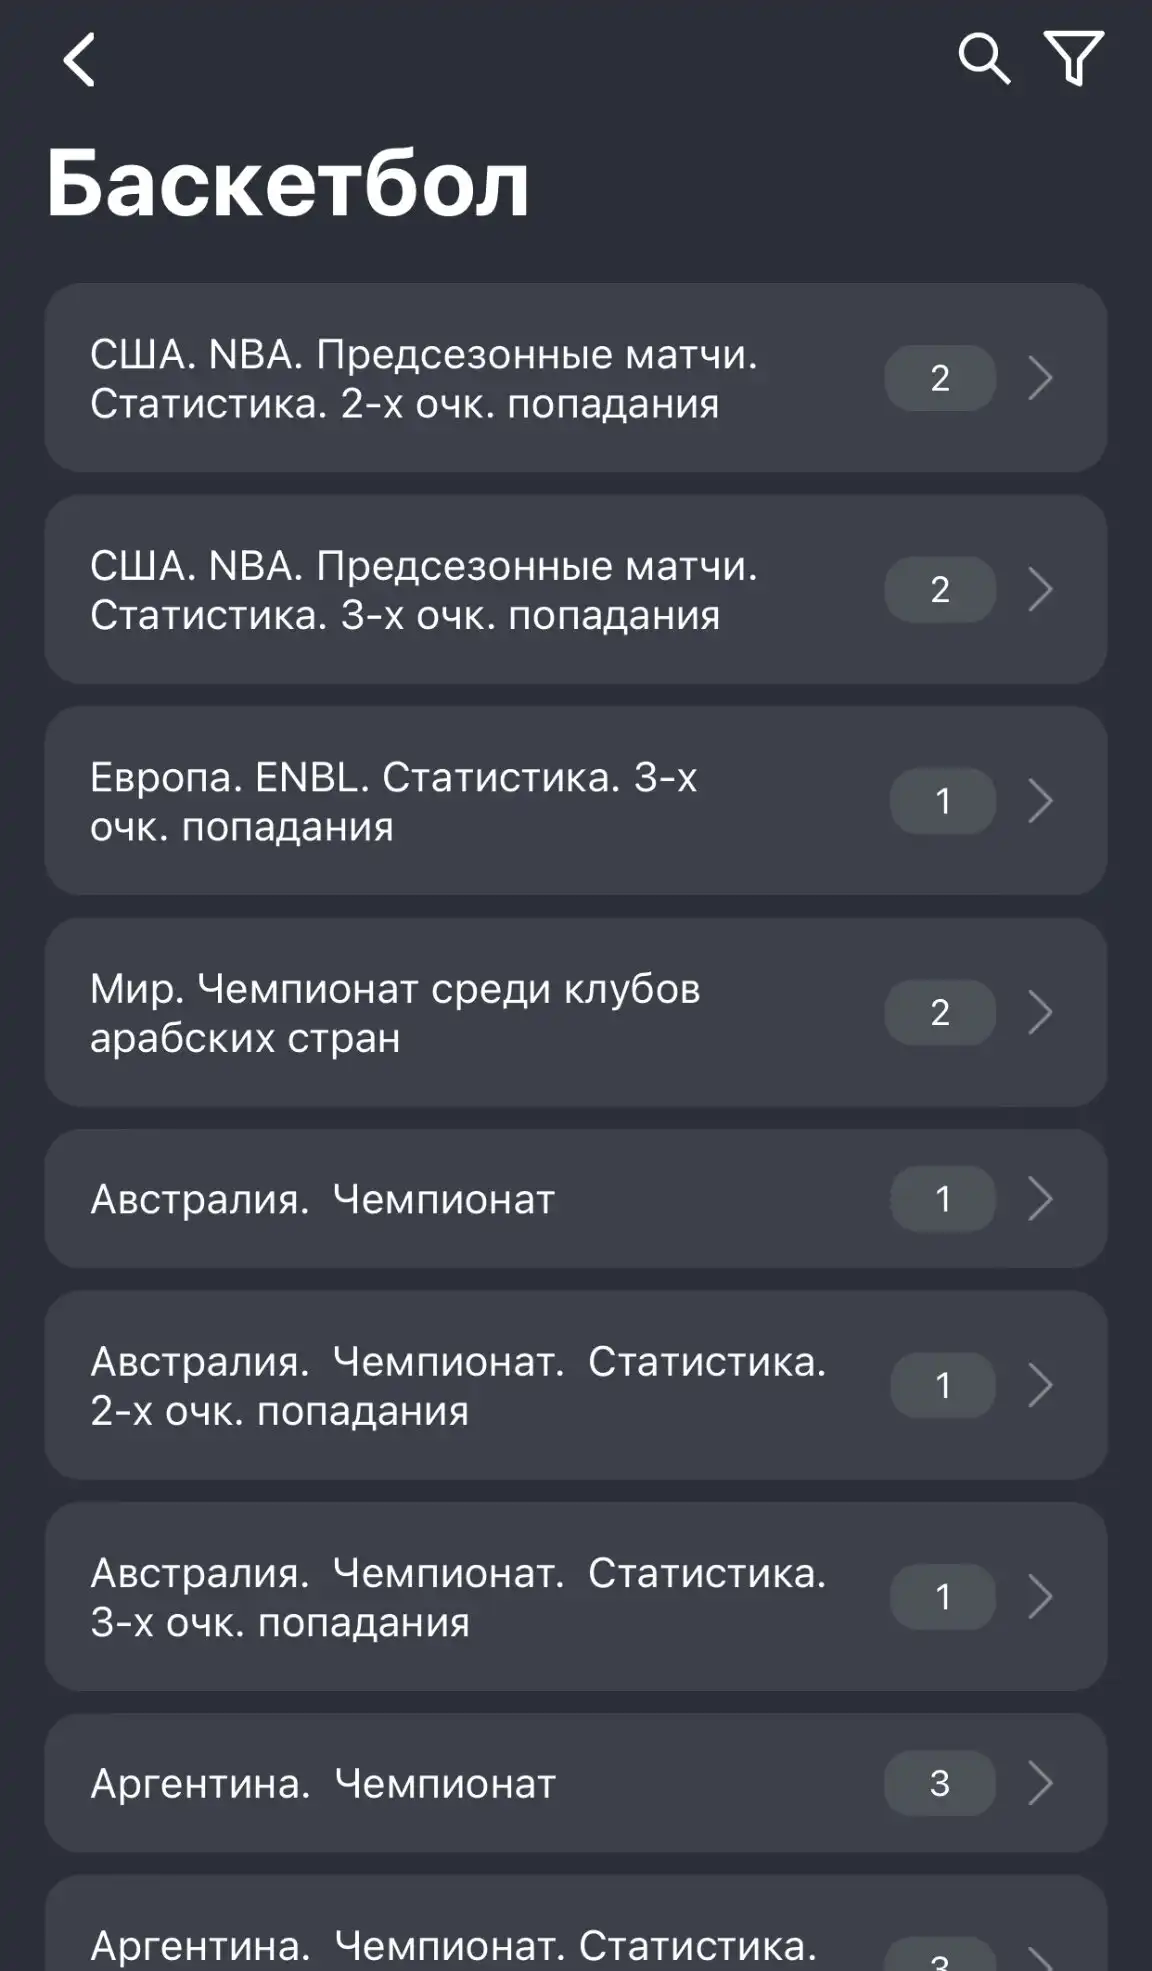 Баскетбол в мобильном приложении БалтБет на айфон